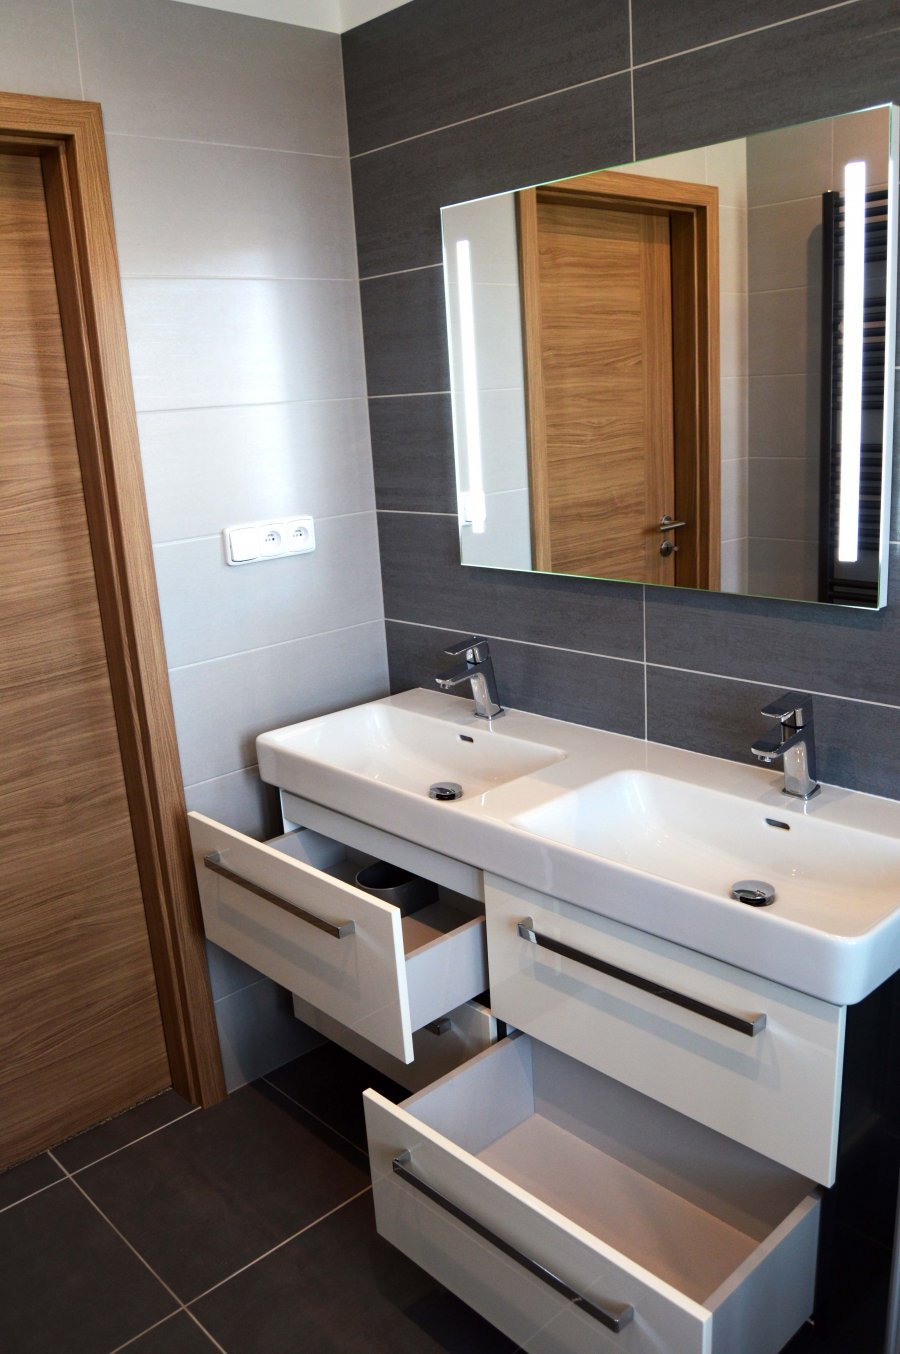 Rekonstrukce koupelny | Koupelnový nábytek je v barvě dle vzorníku RAL Antrazit č.7016 a čelní plochy jsou bílé ve vysokém lesku | Koupelny-svitavy.cz